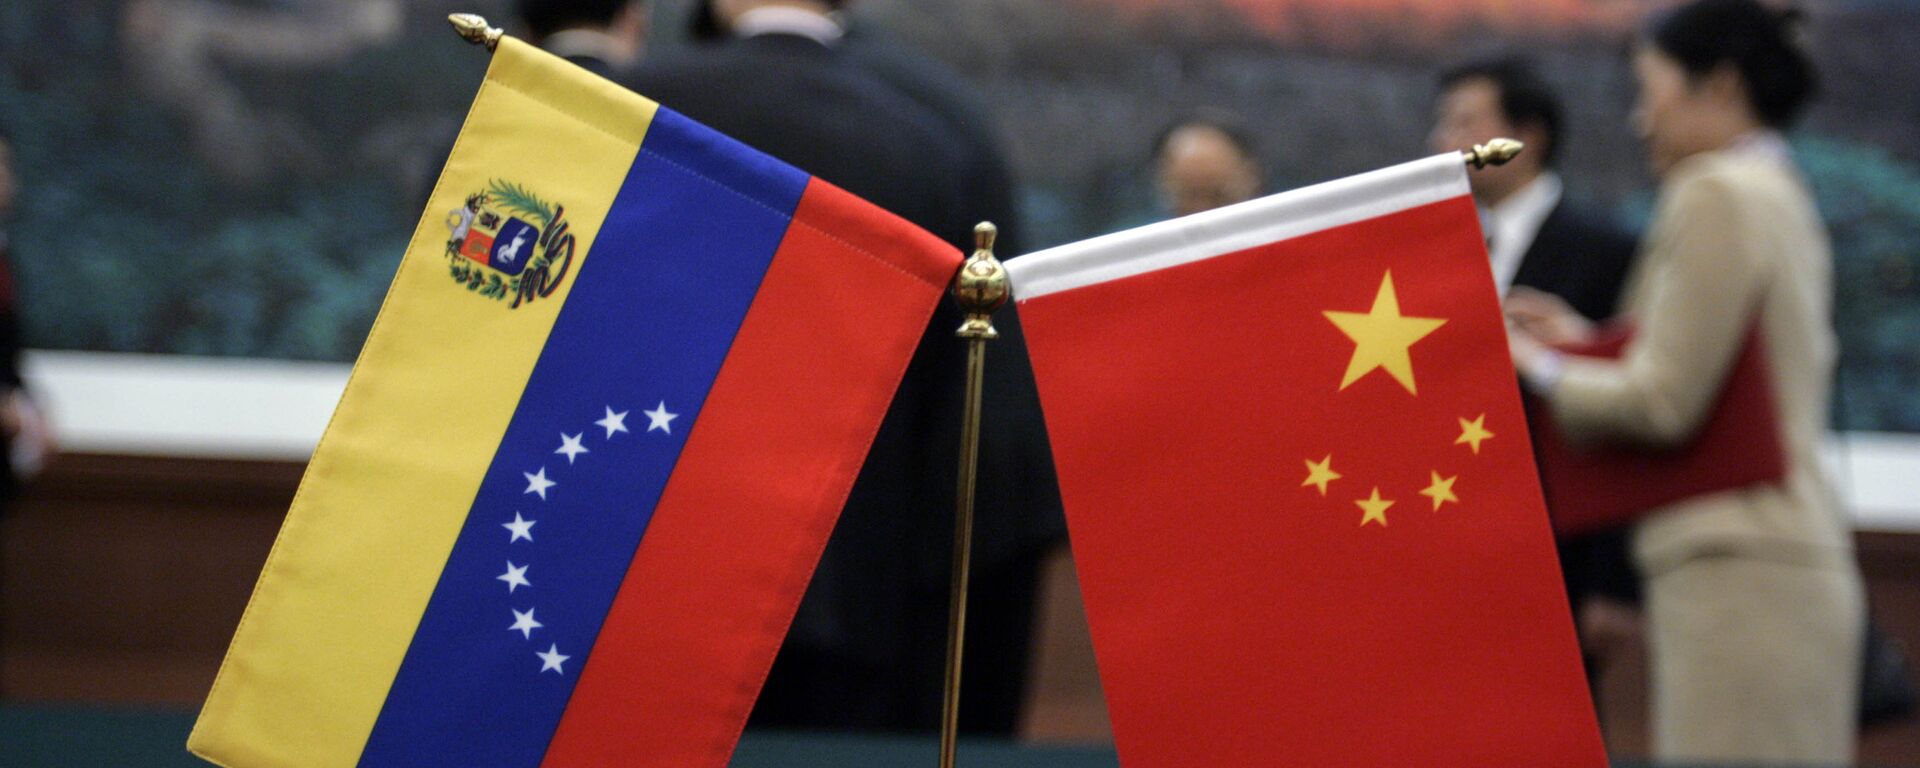 Banderas de Venezuela y China - Sputnik Mundo, 1920, 05.09.2022